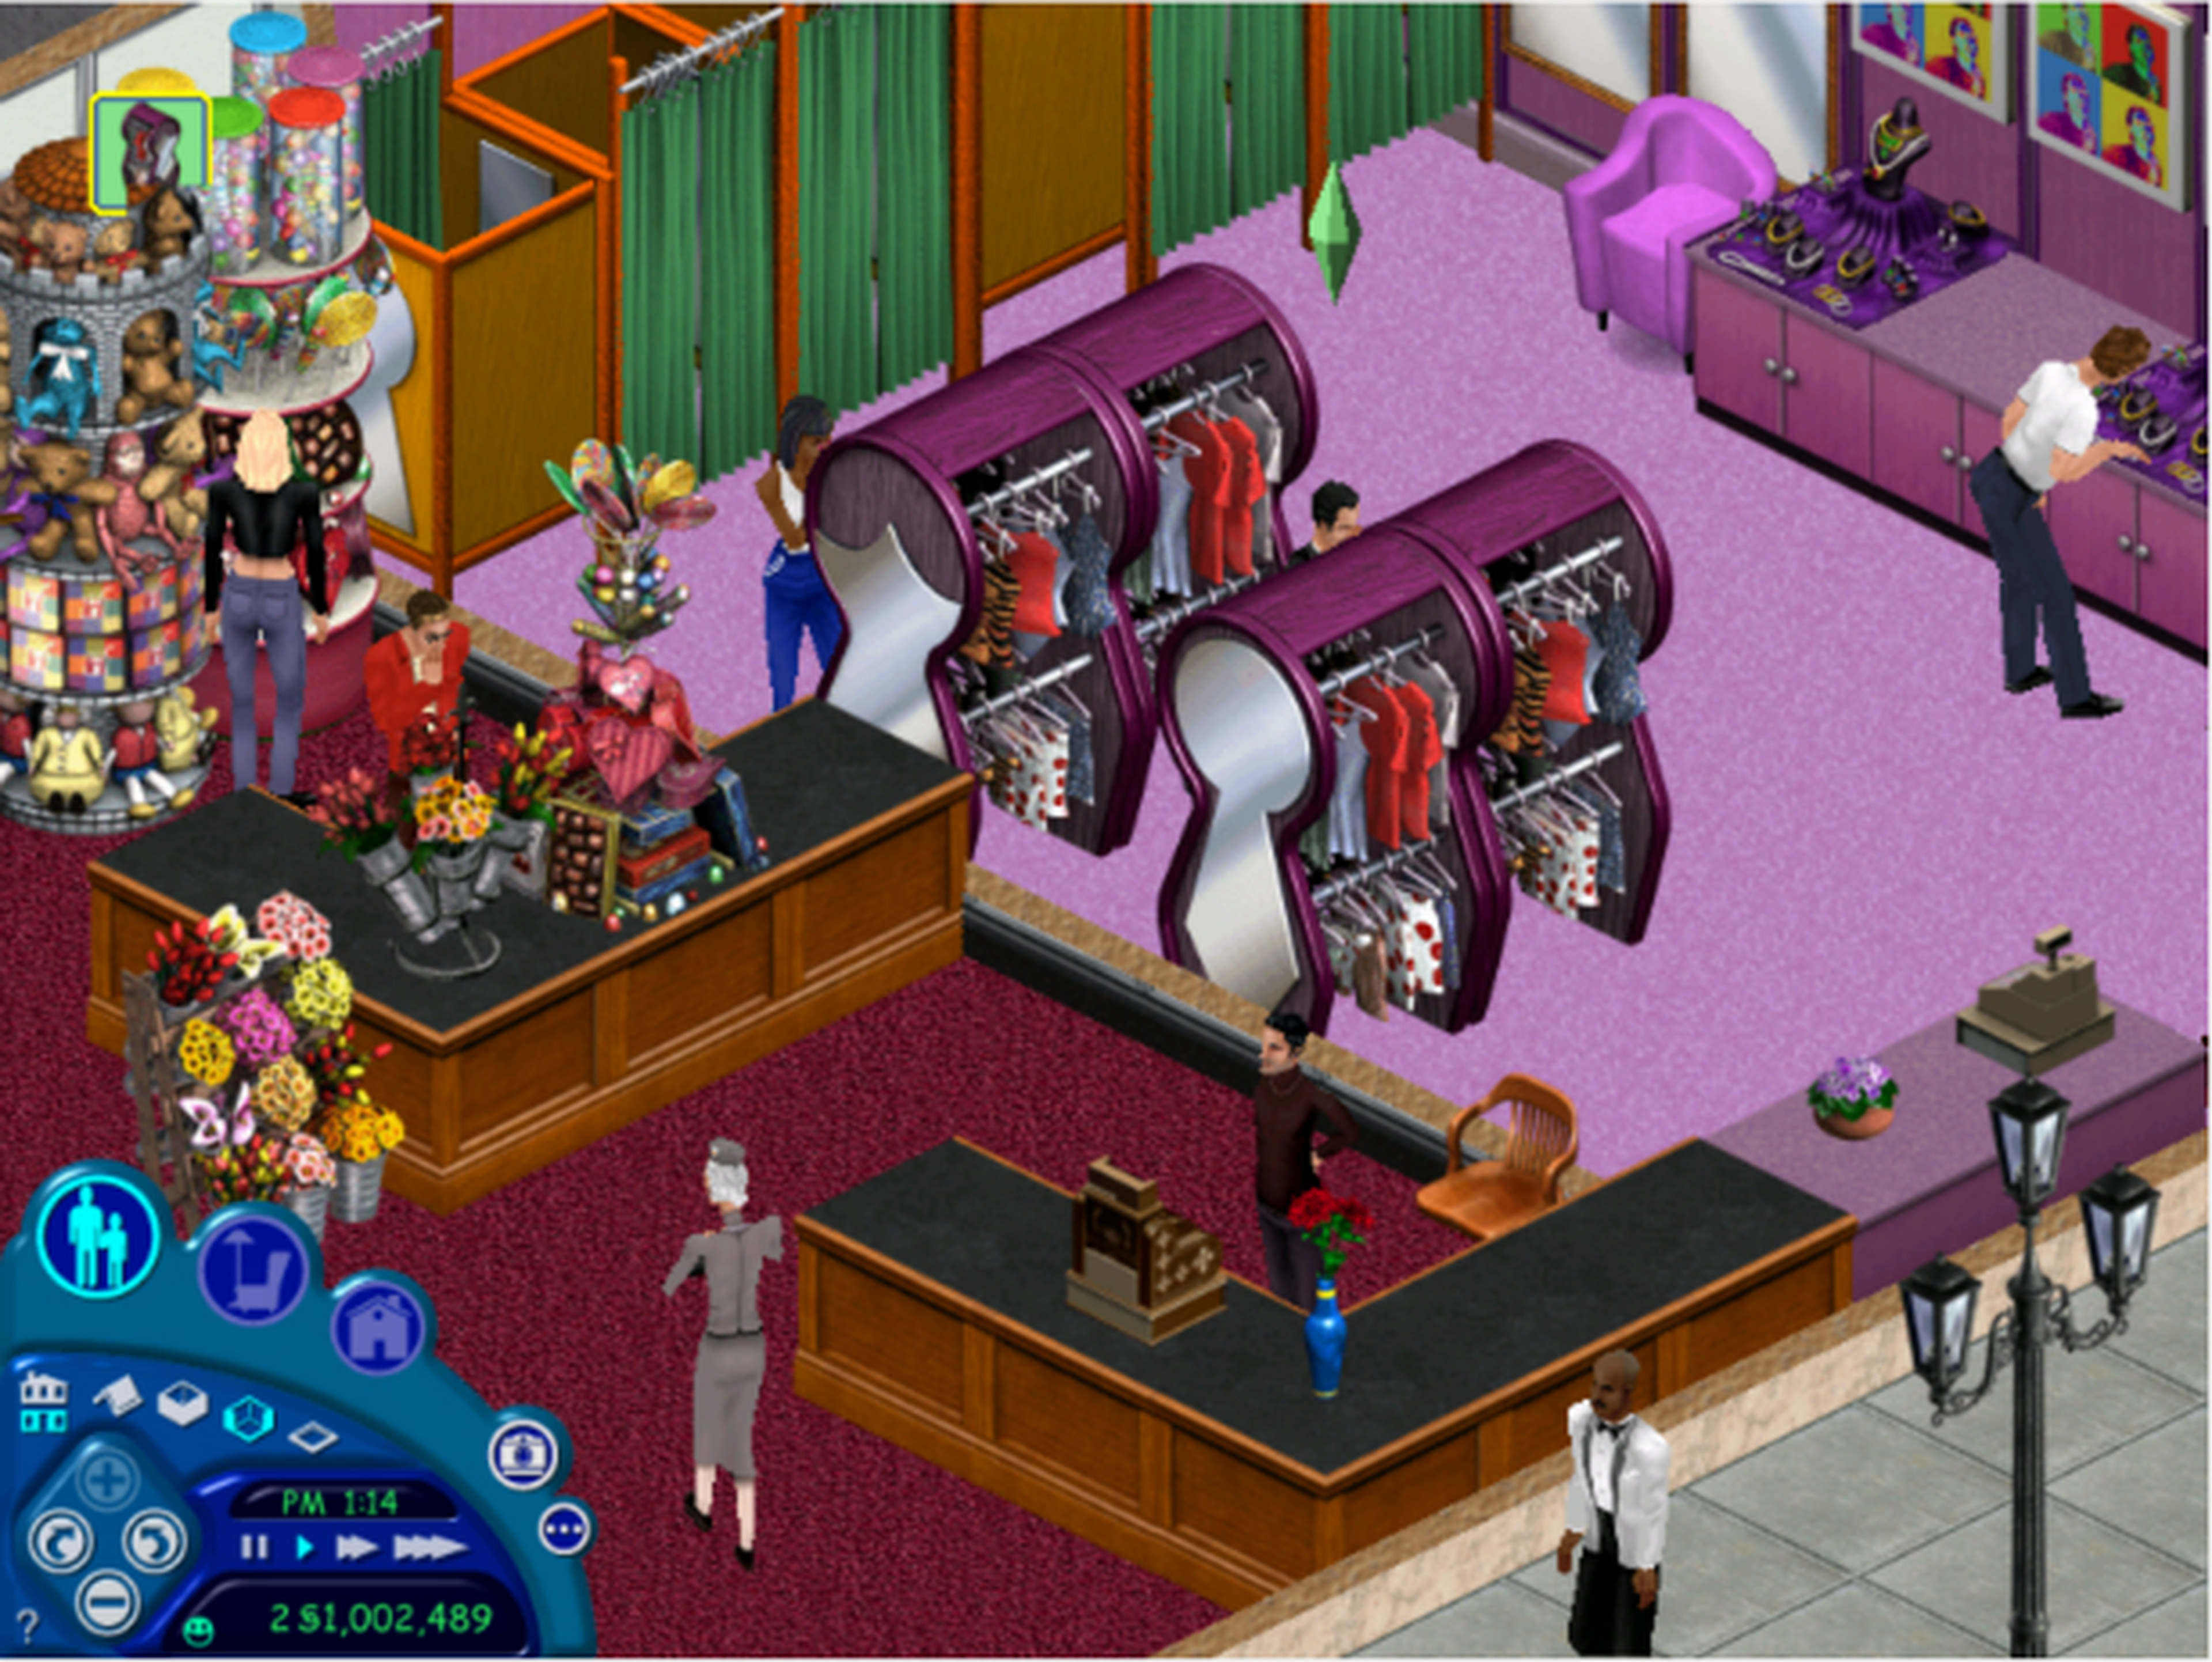 Los Sims - 16 años de historias